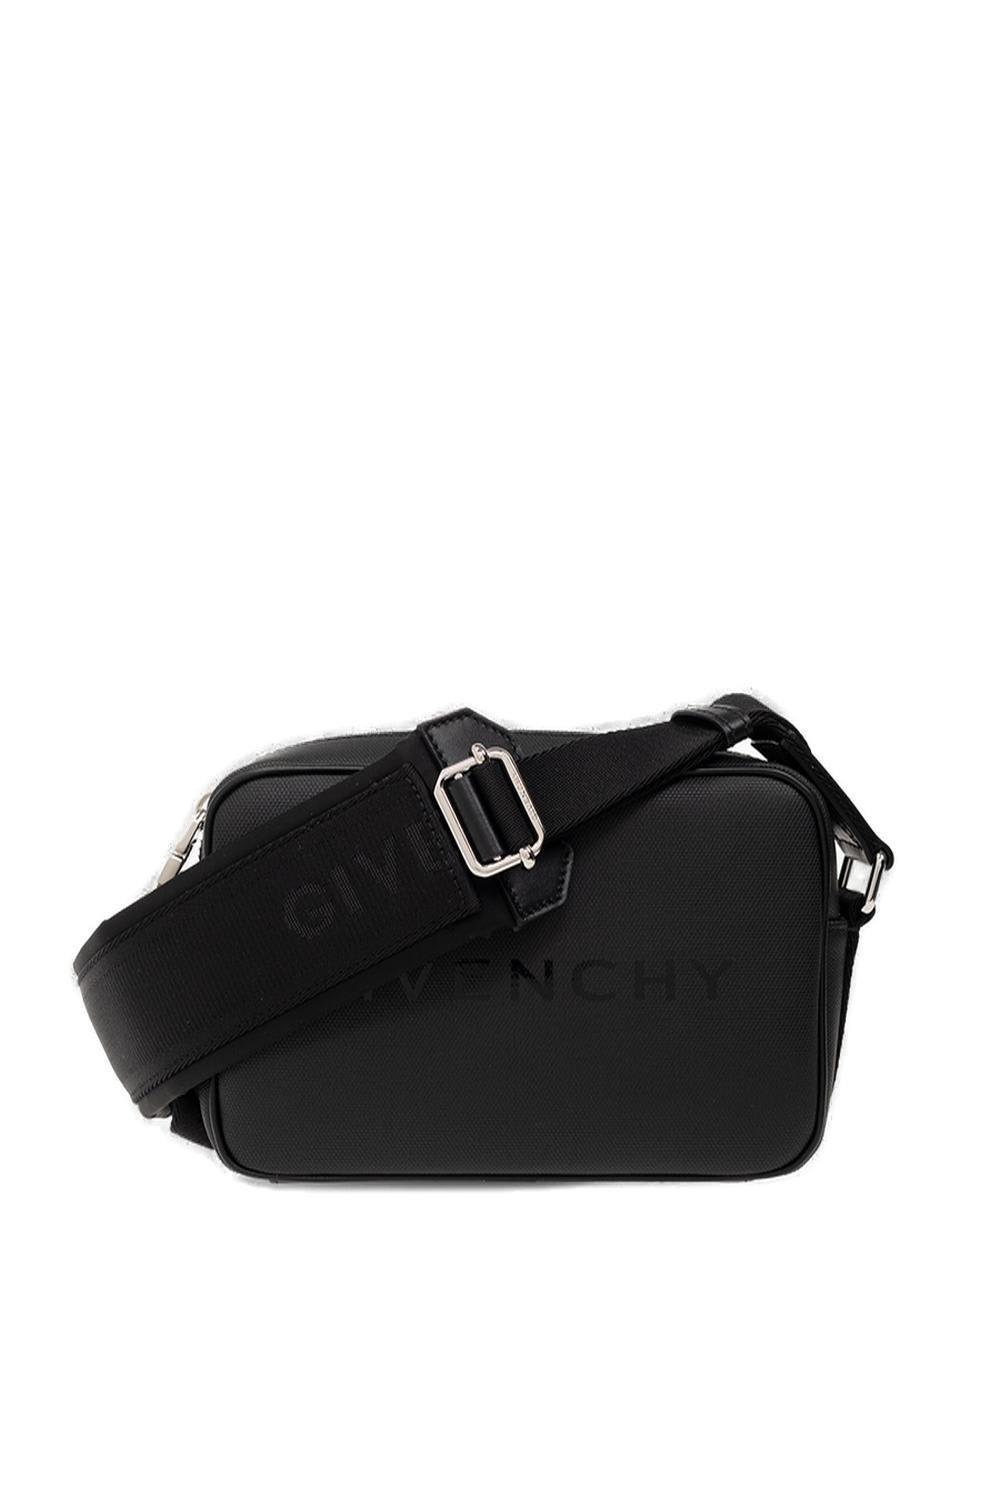 Givenchy Logo Detailed Shoulder Bag